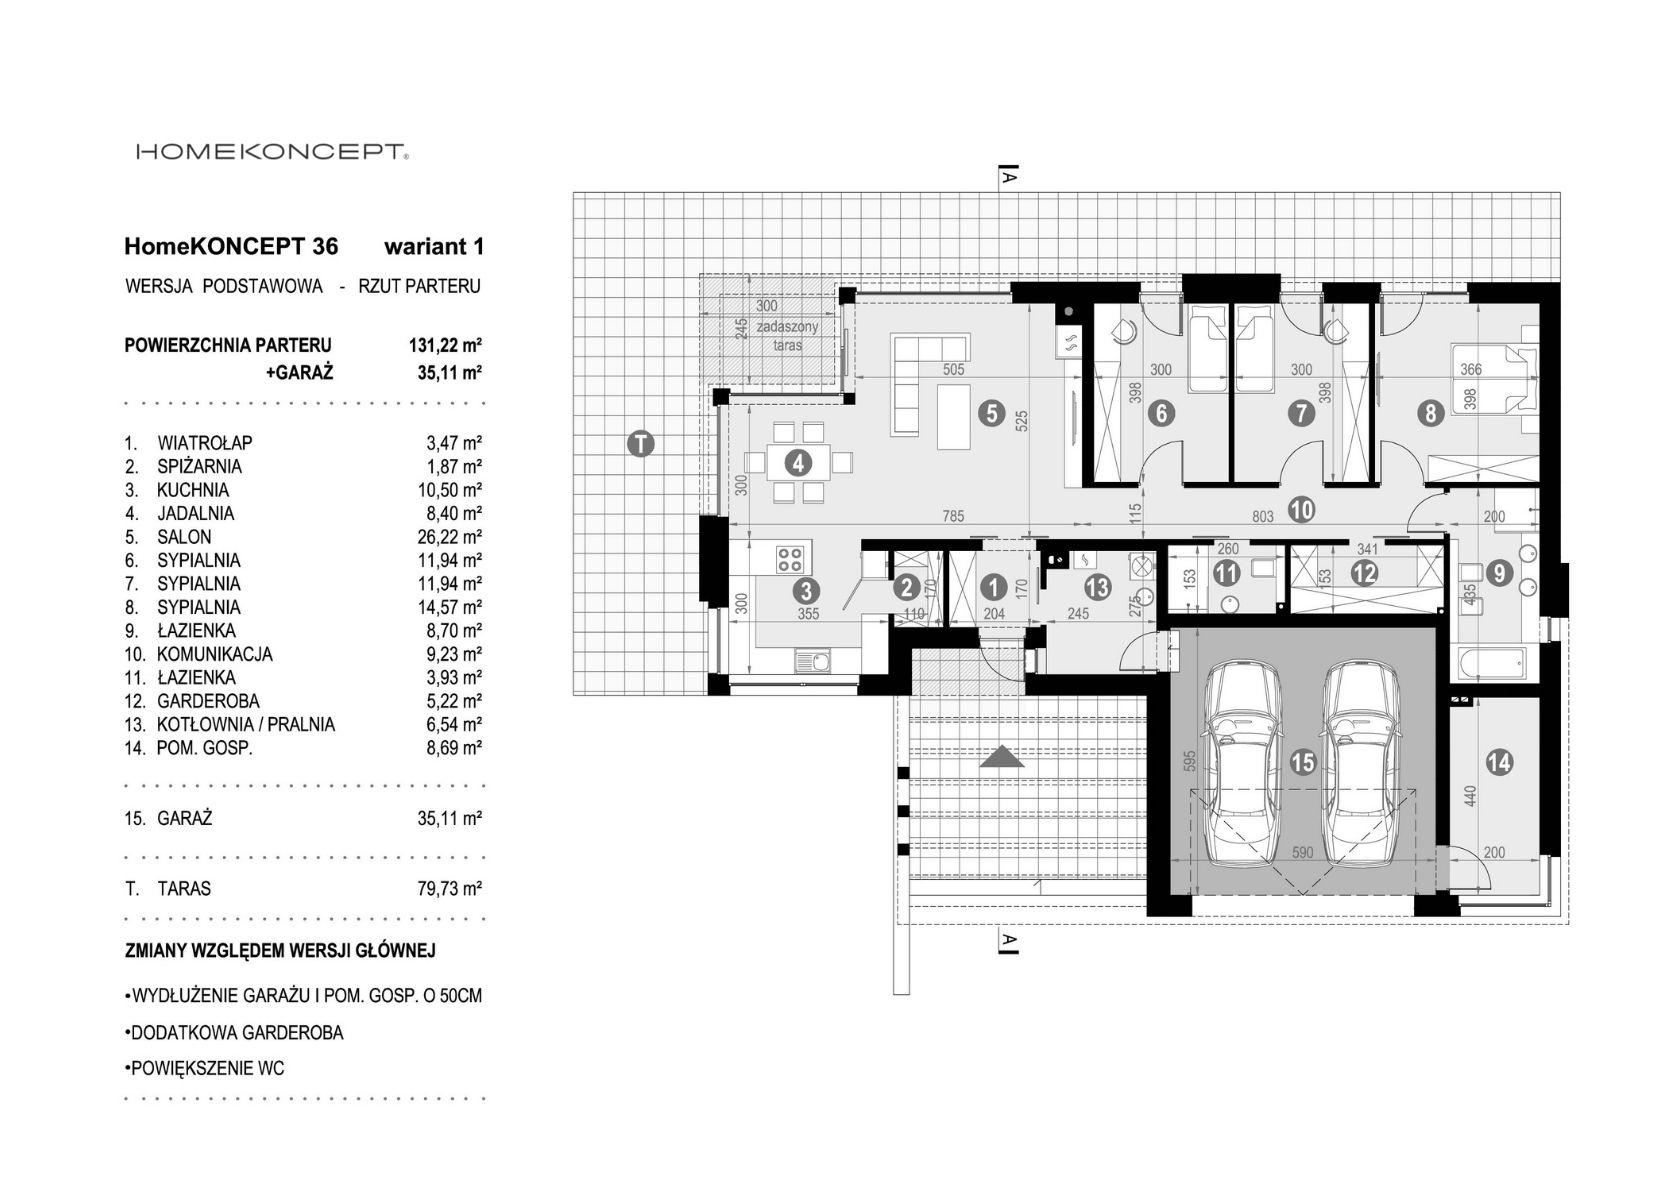 Układ funkcjonalny projektu domu nowoczesnego HOMEKONCEPT 36 wariant 1